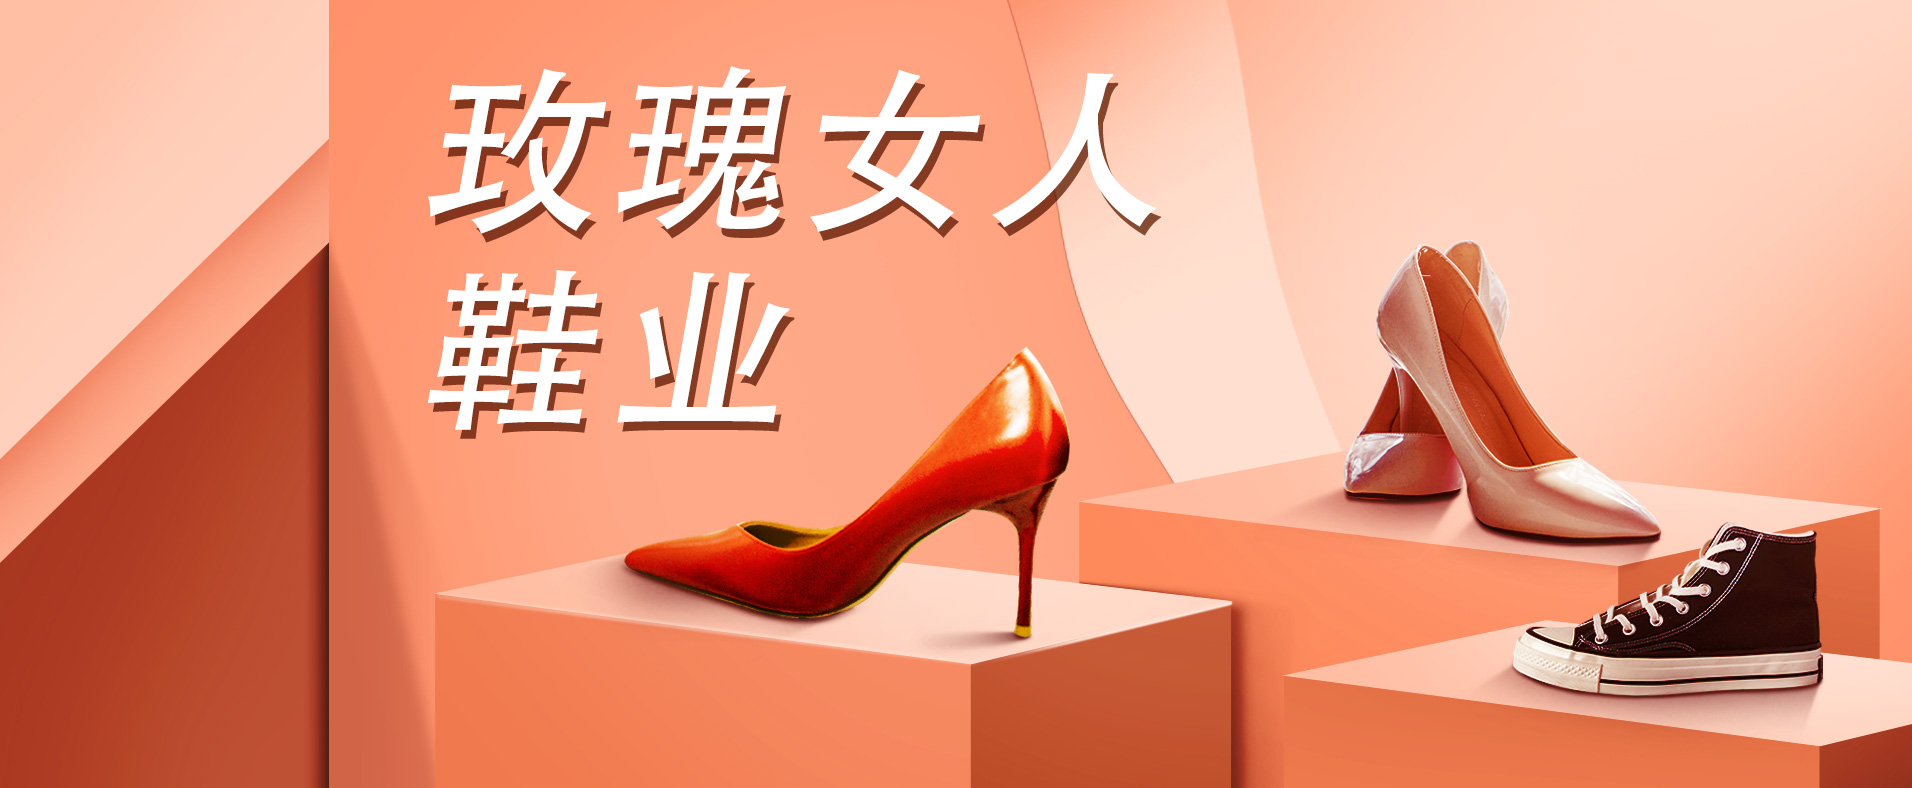 【案例分享】鞋业小程序—玫瑰女人鞋业